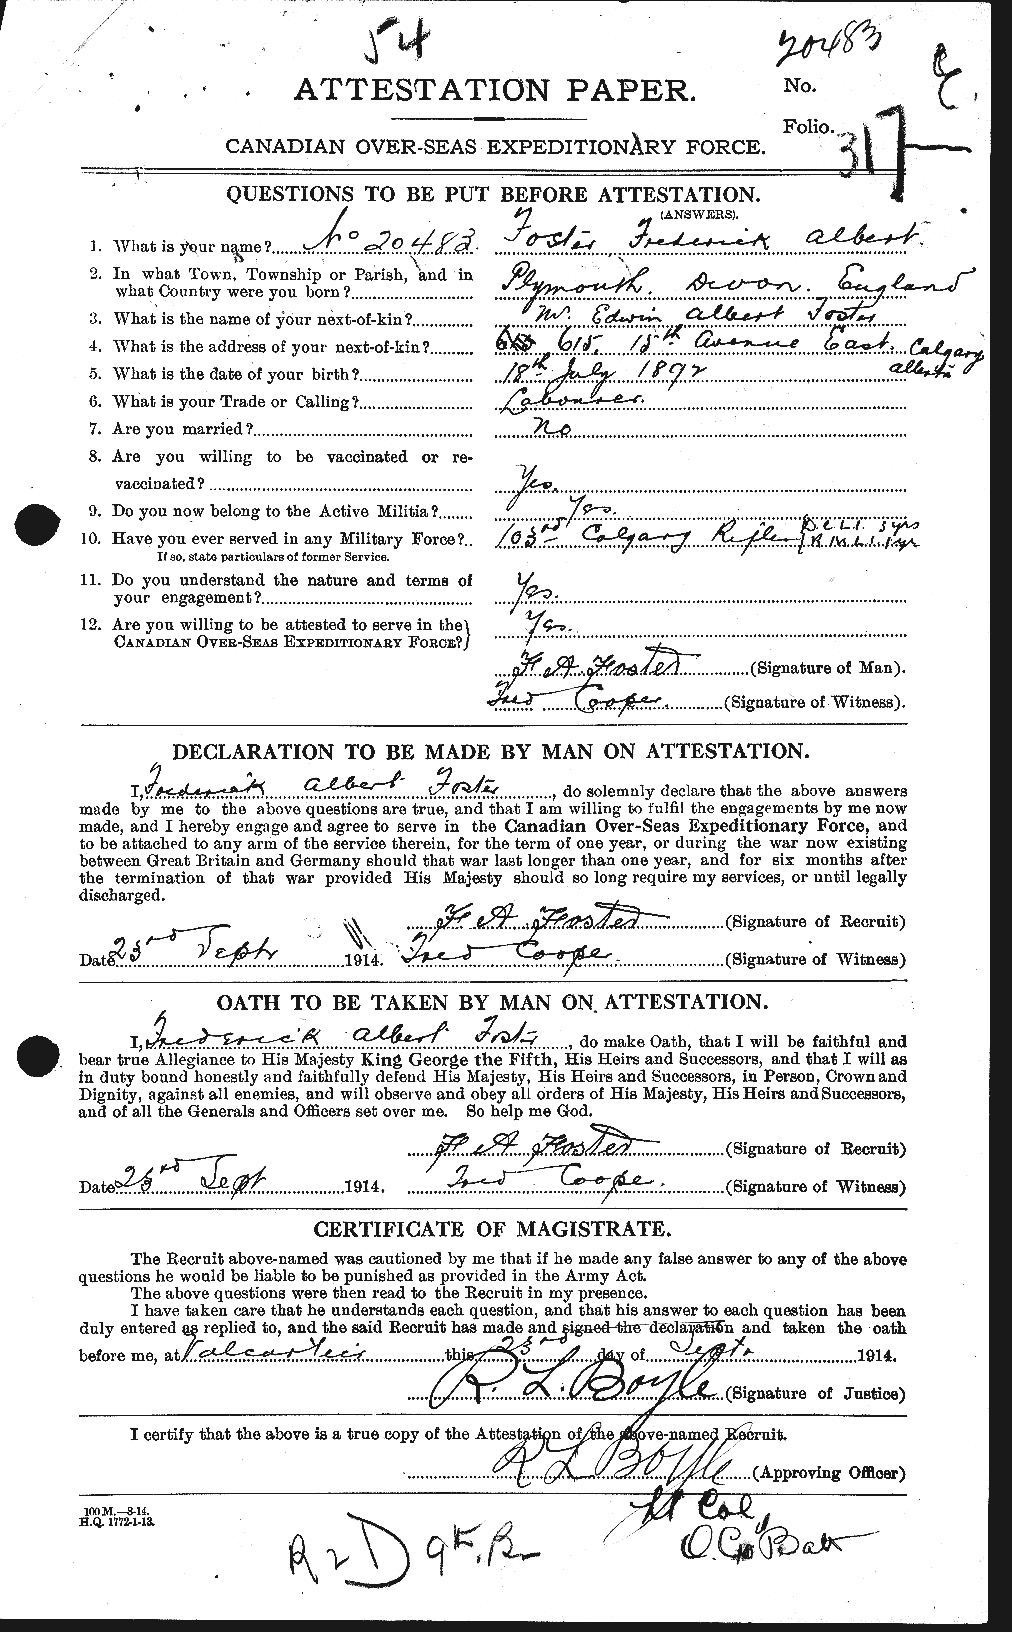 Dossiers du Personnel de la Première Guerre mondiale - CEC 330646a